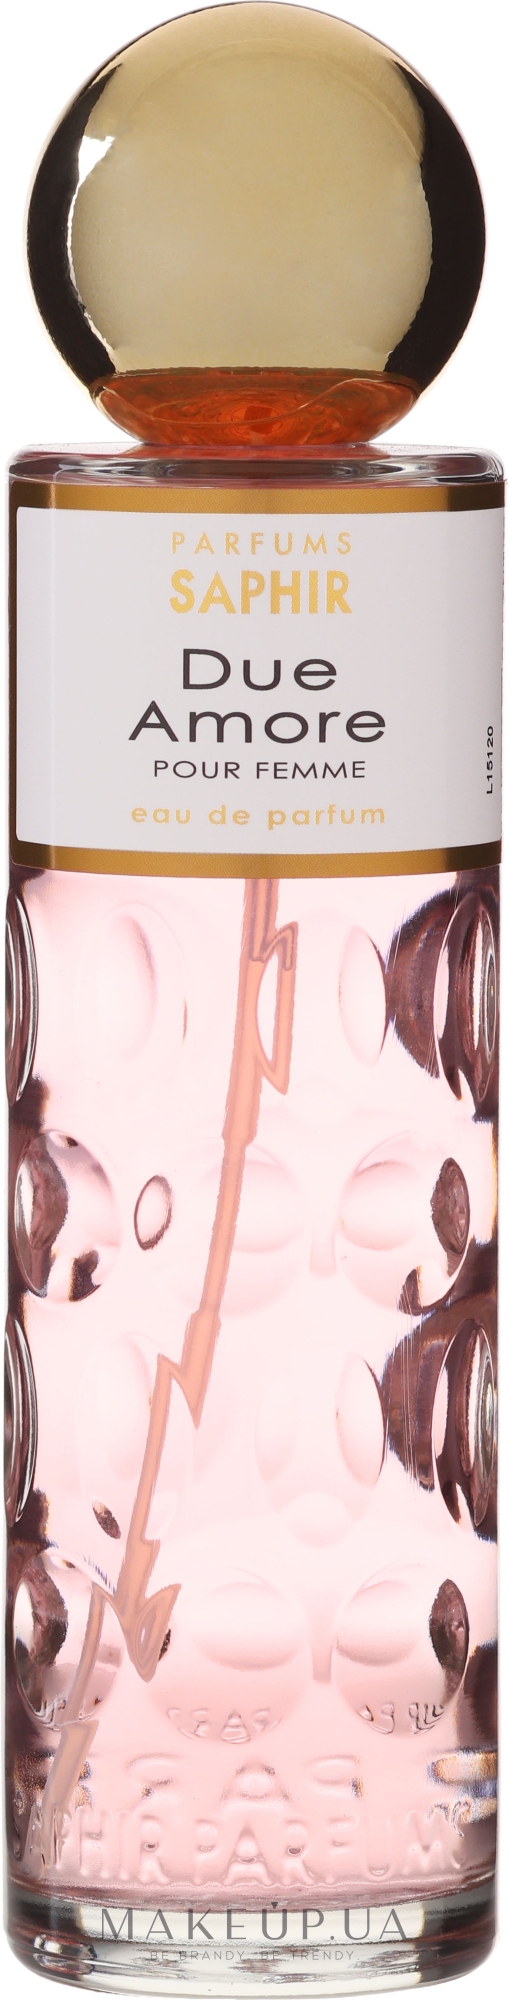 Saphir Parfums Due Amore - Парфюмированная вода — фото 200ml